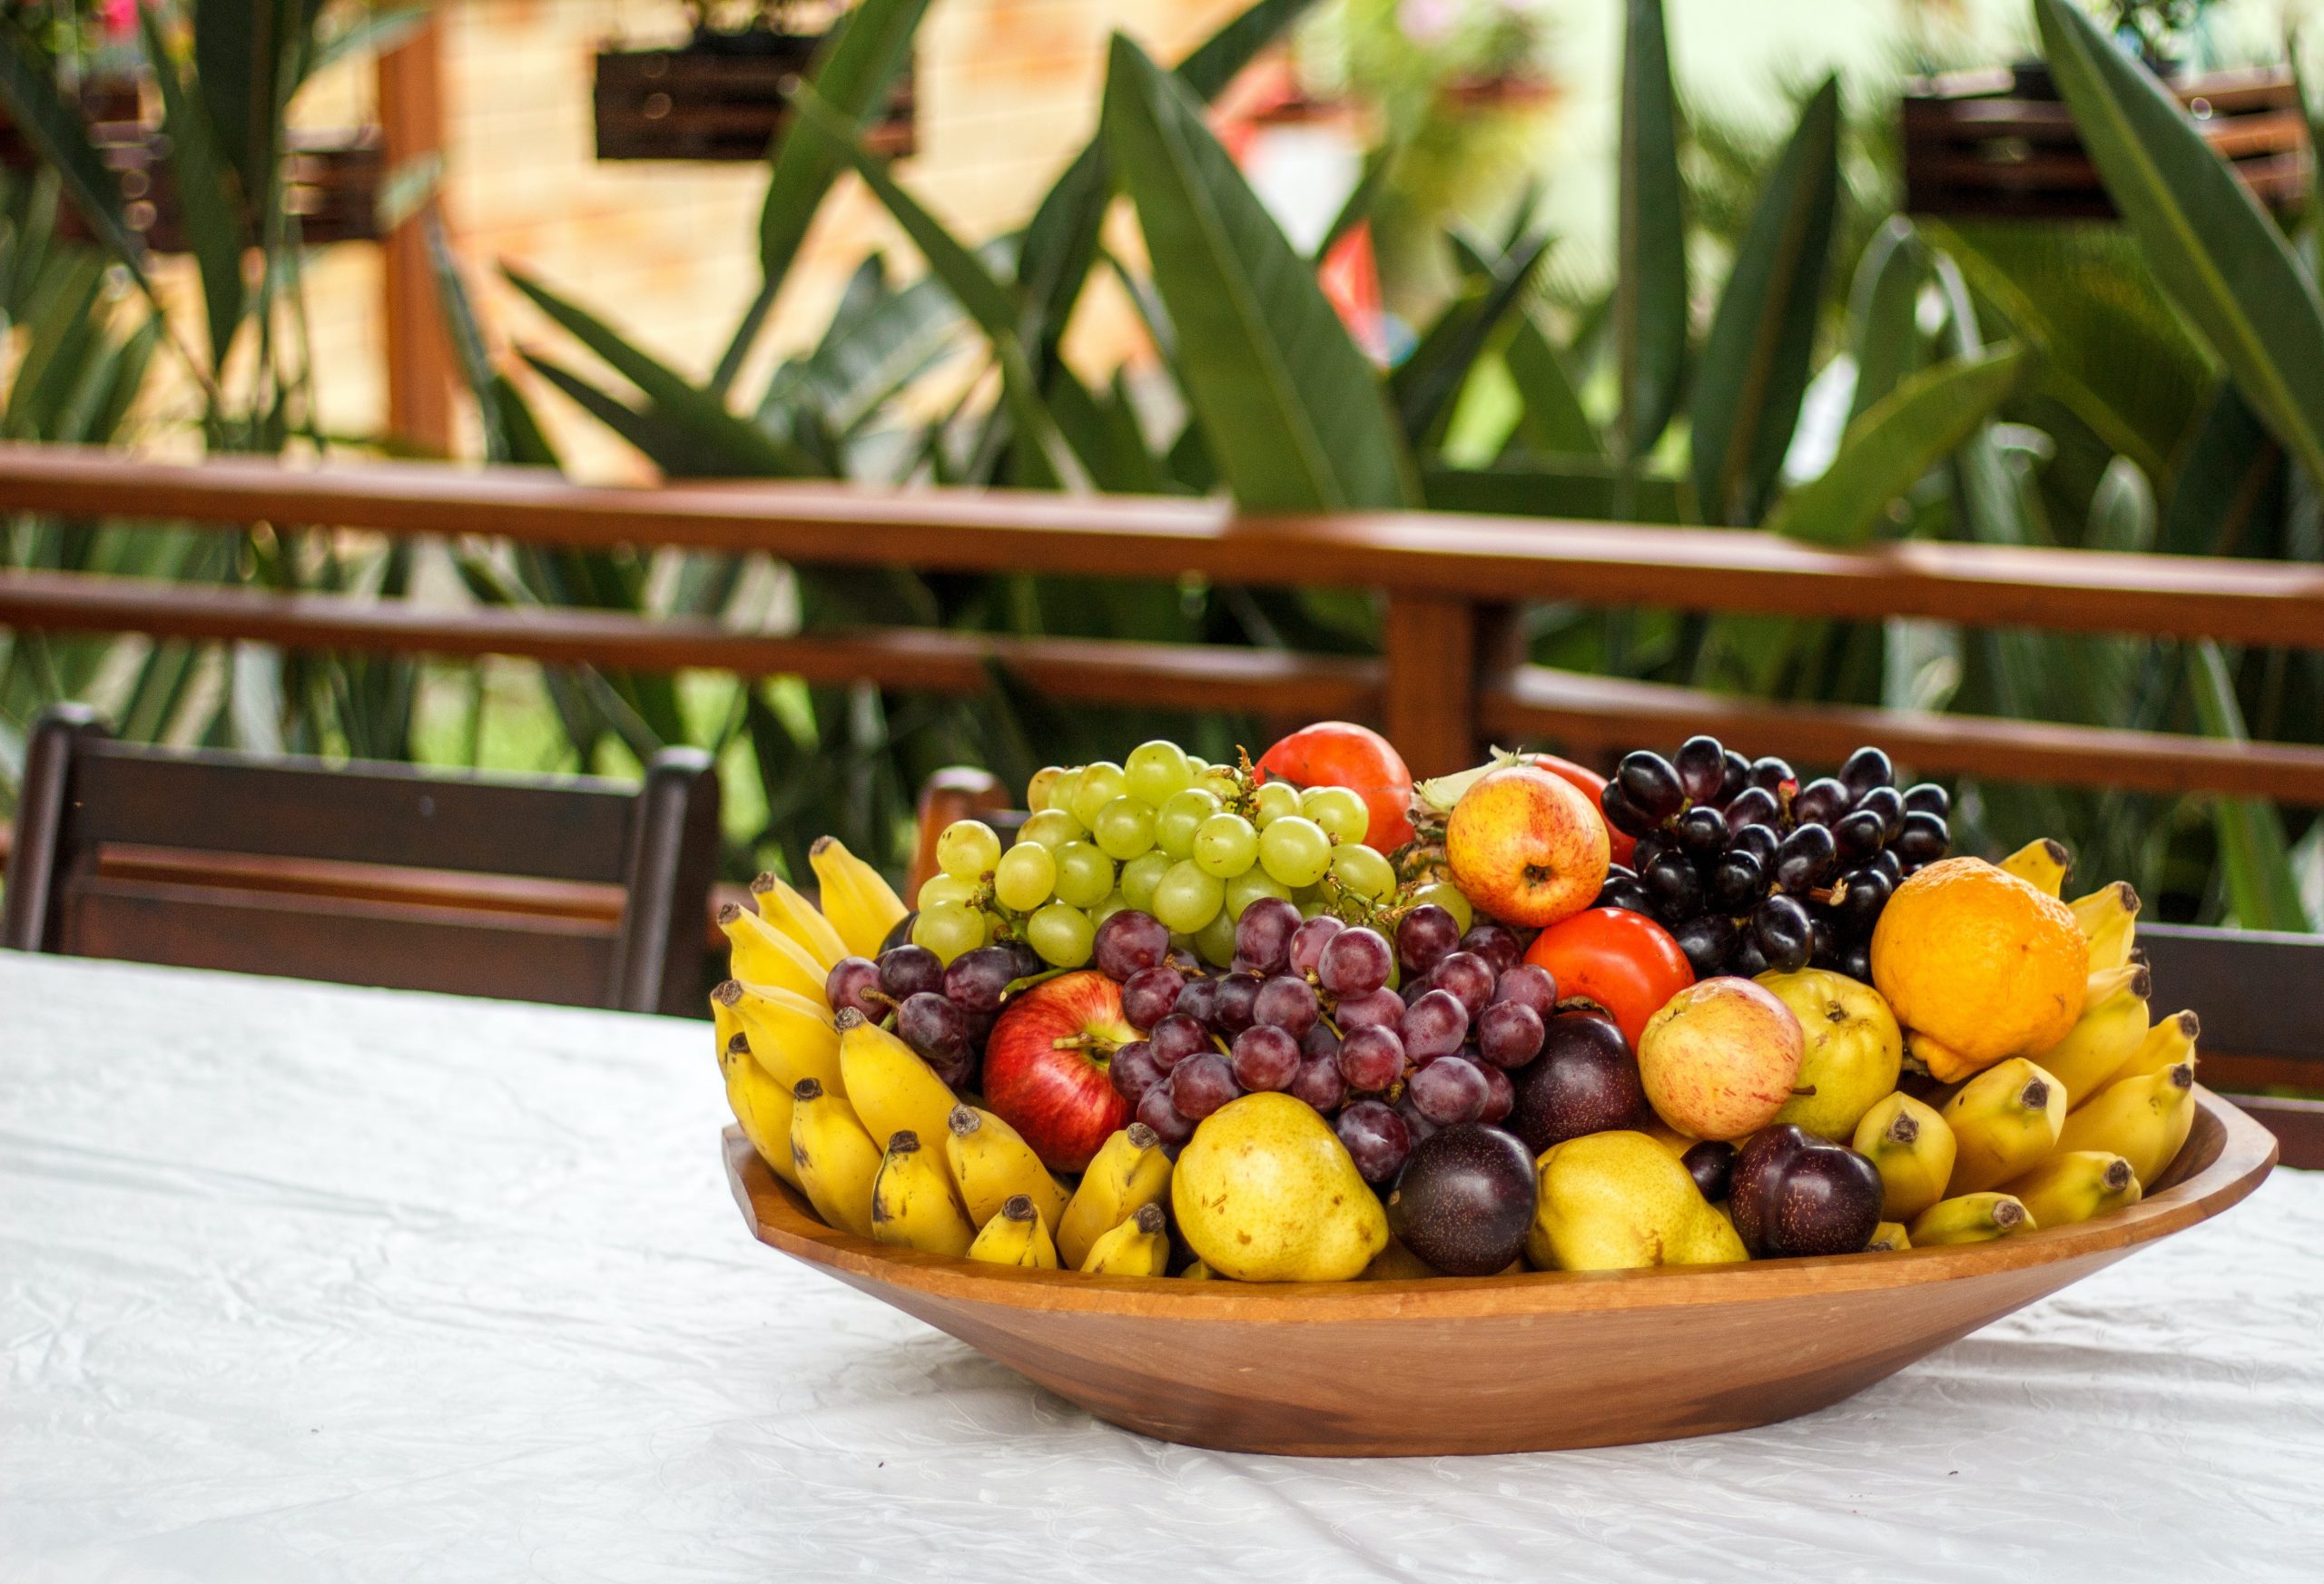 Receta de ensalada de frutas con plátano, naranja, piña y kiwi